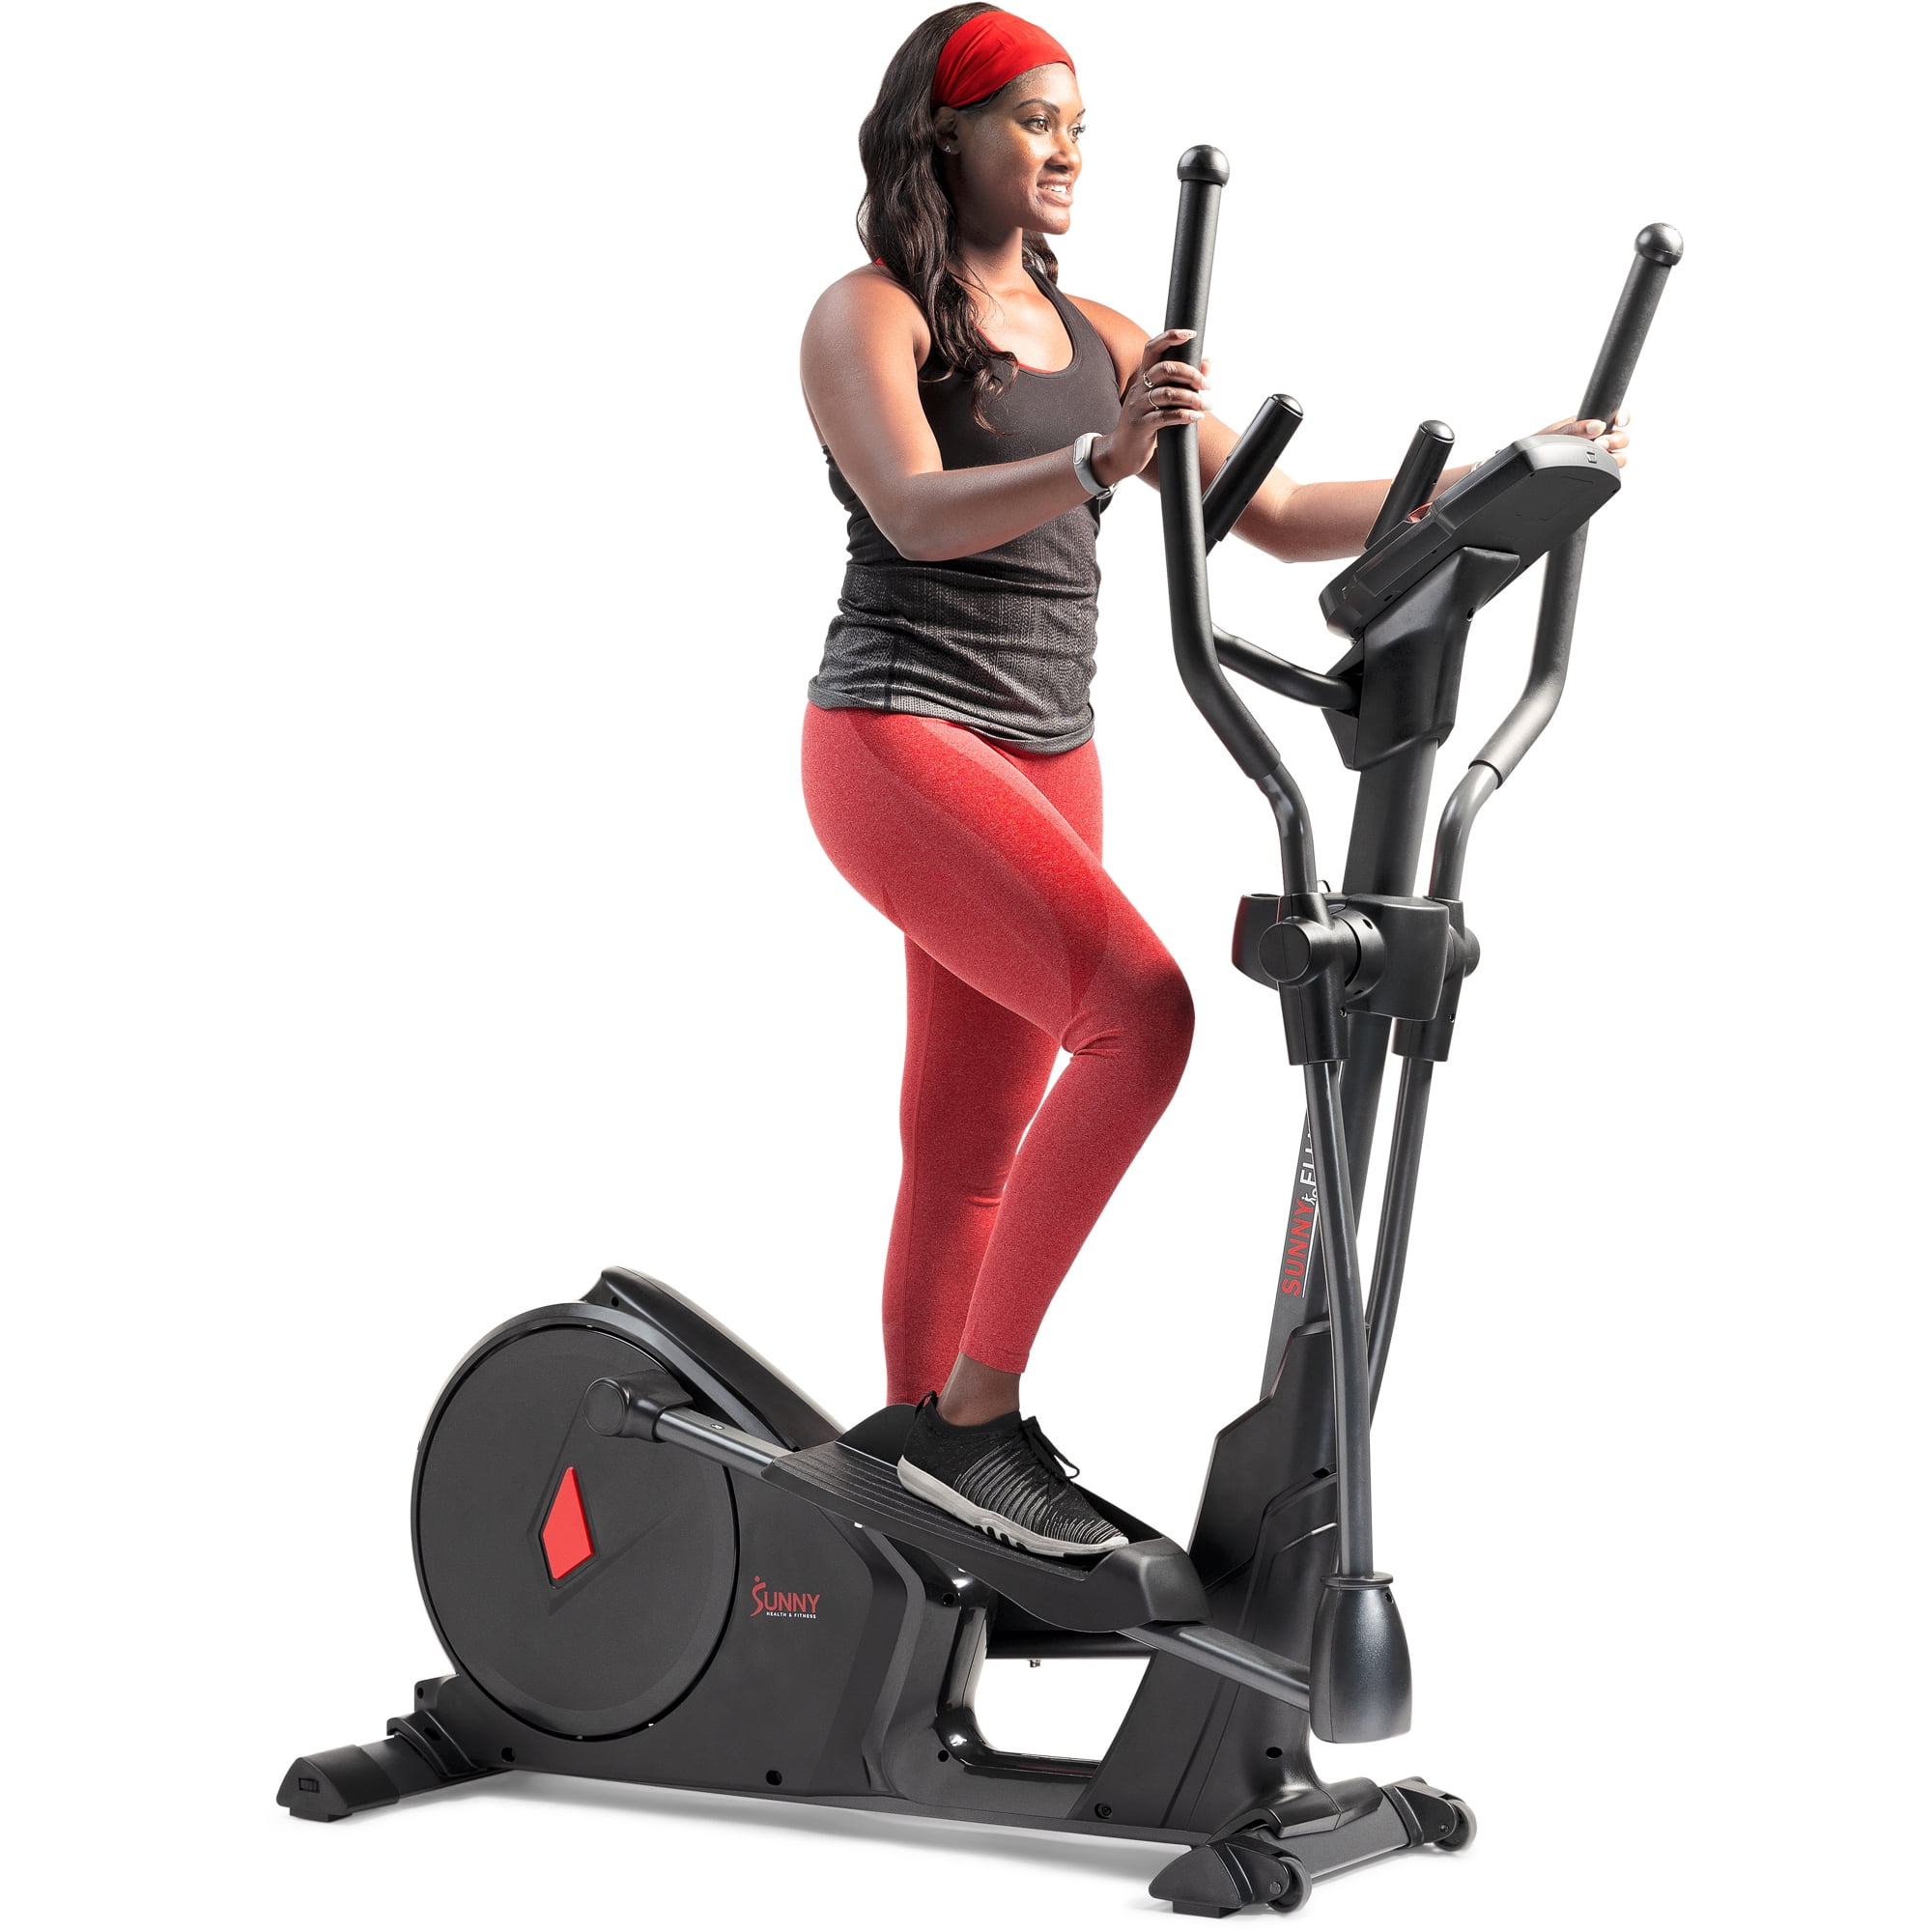 Sunny Health & Fitness Premium Elliptical Exercise Machine Smart Trainer